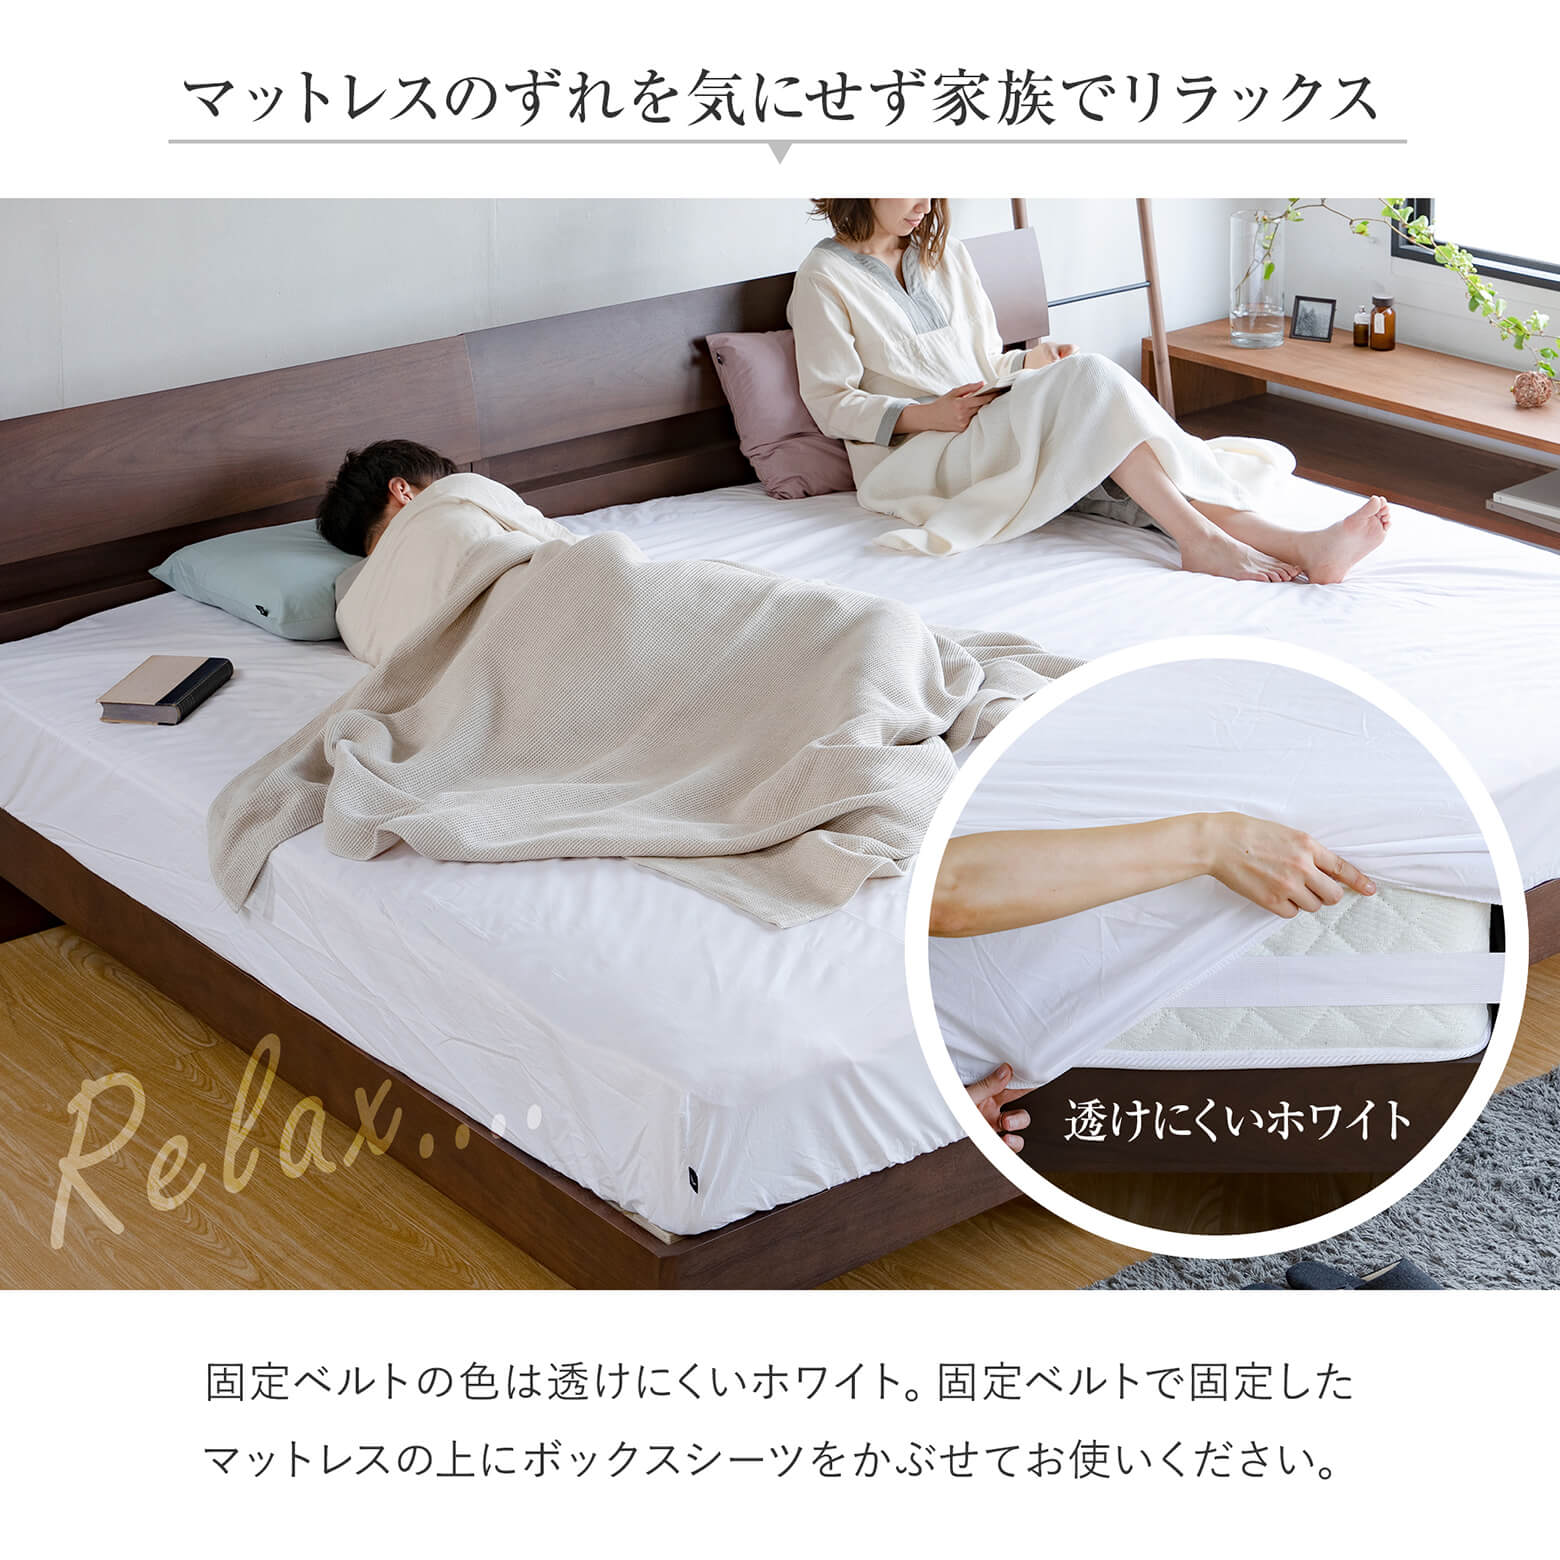 マットレス固定ベルト | 日本最大級のベッド専門店 ビーナスベッド